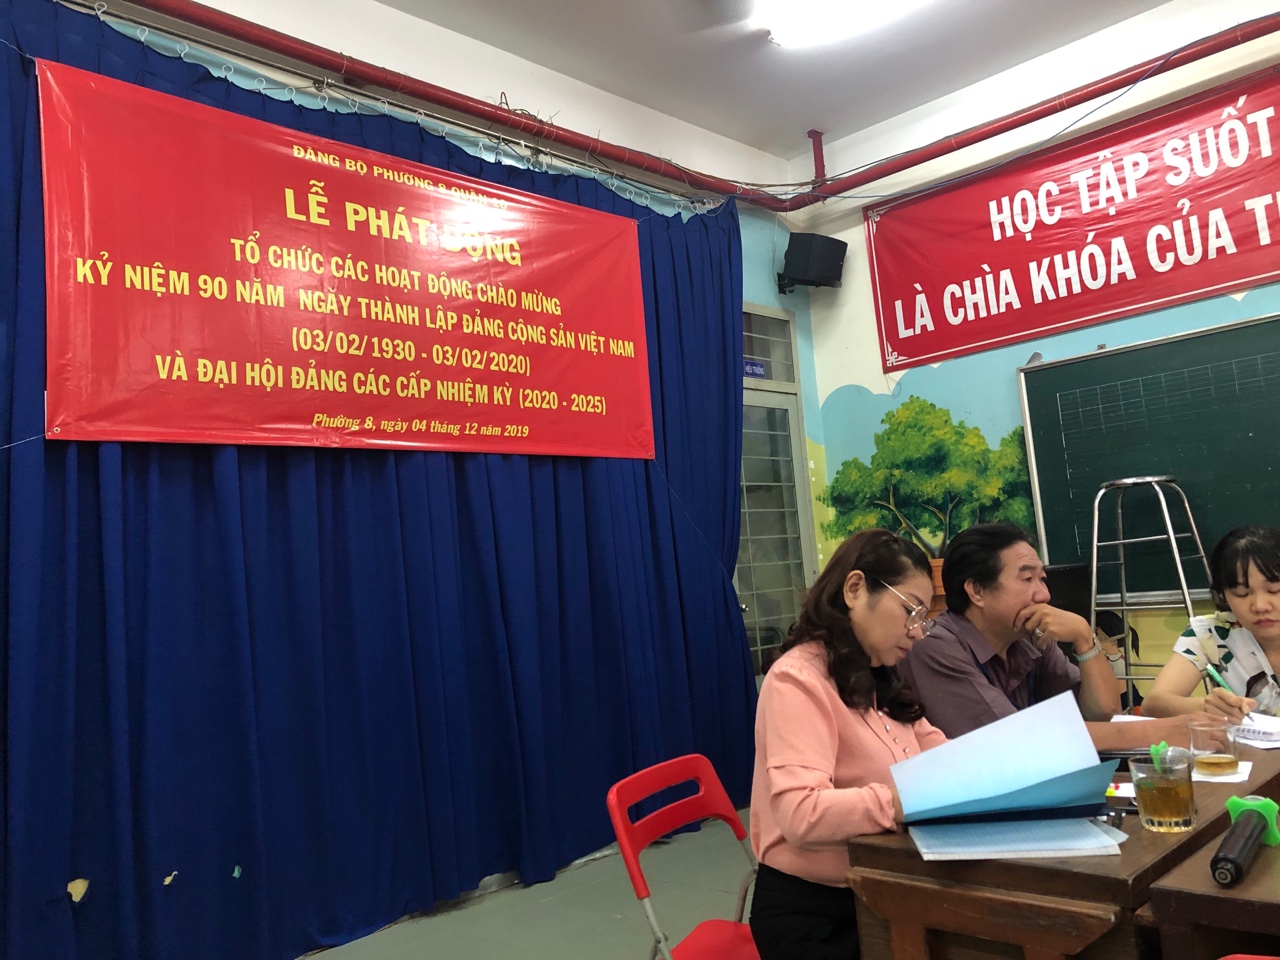 Image: Phát động các hoạt động chào mừng kỷ niệm 90 năm ngày thành lập Đảng Cộng sản Việt Nam ( 03/02/1930 - 03/02/2020)